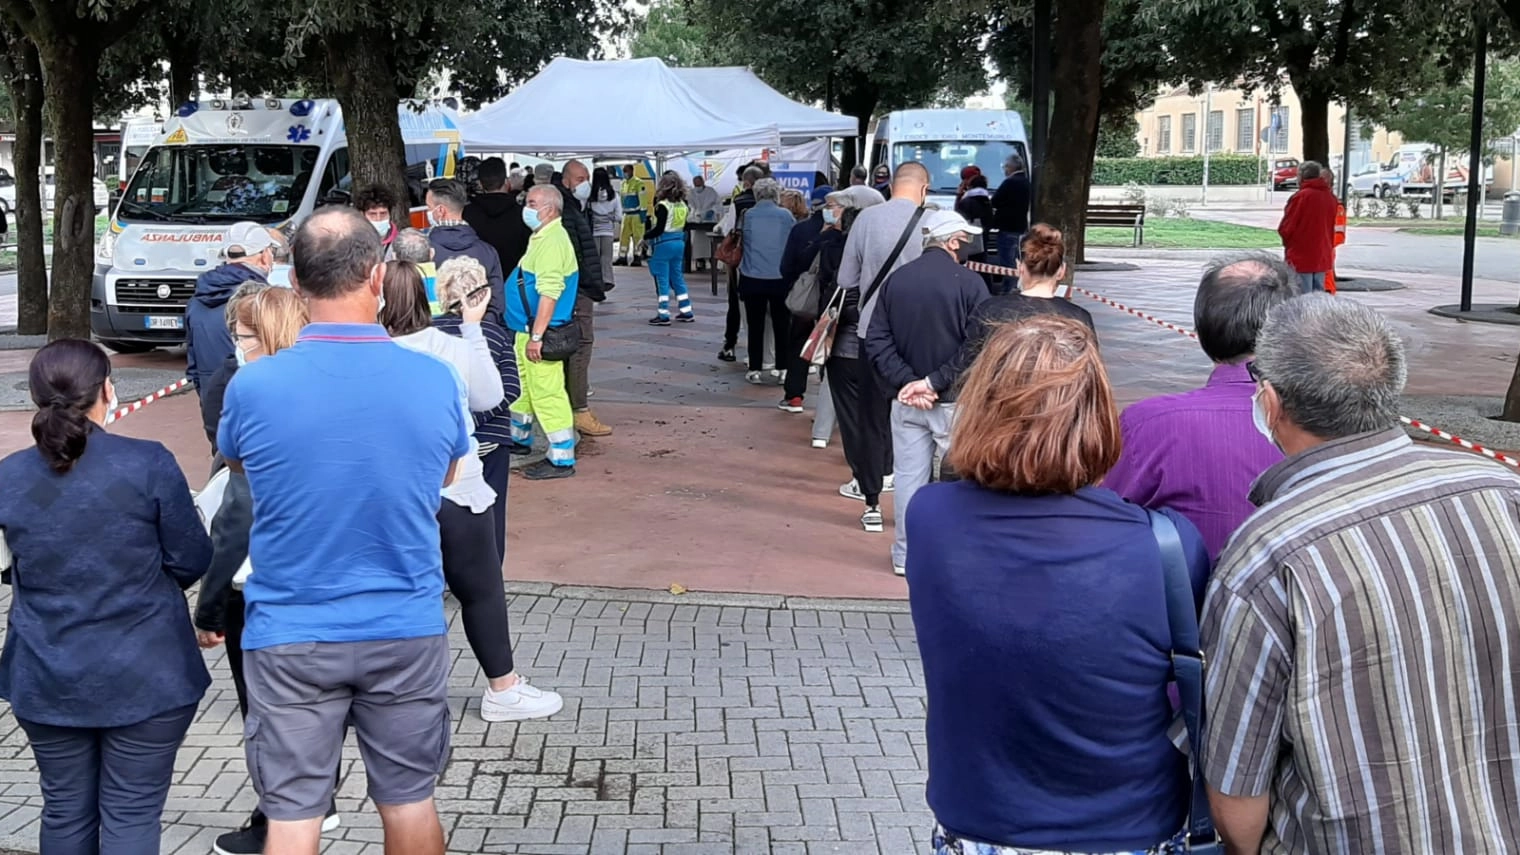 In fila per effettuare il test: qui siamo a Oste di Montemurlo (Prato)